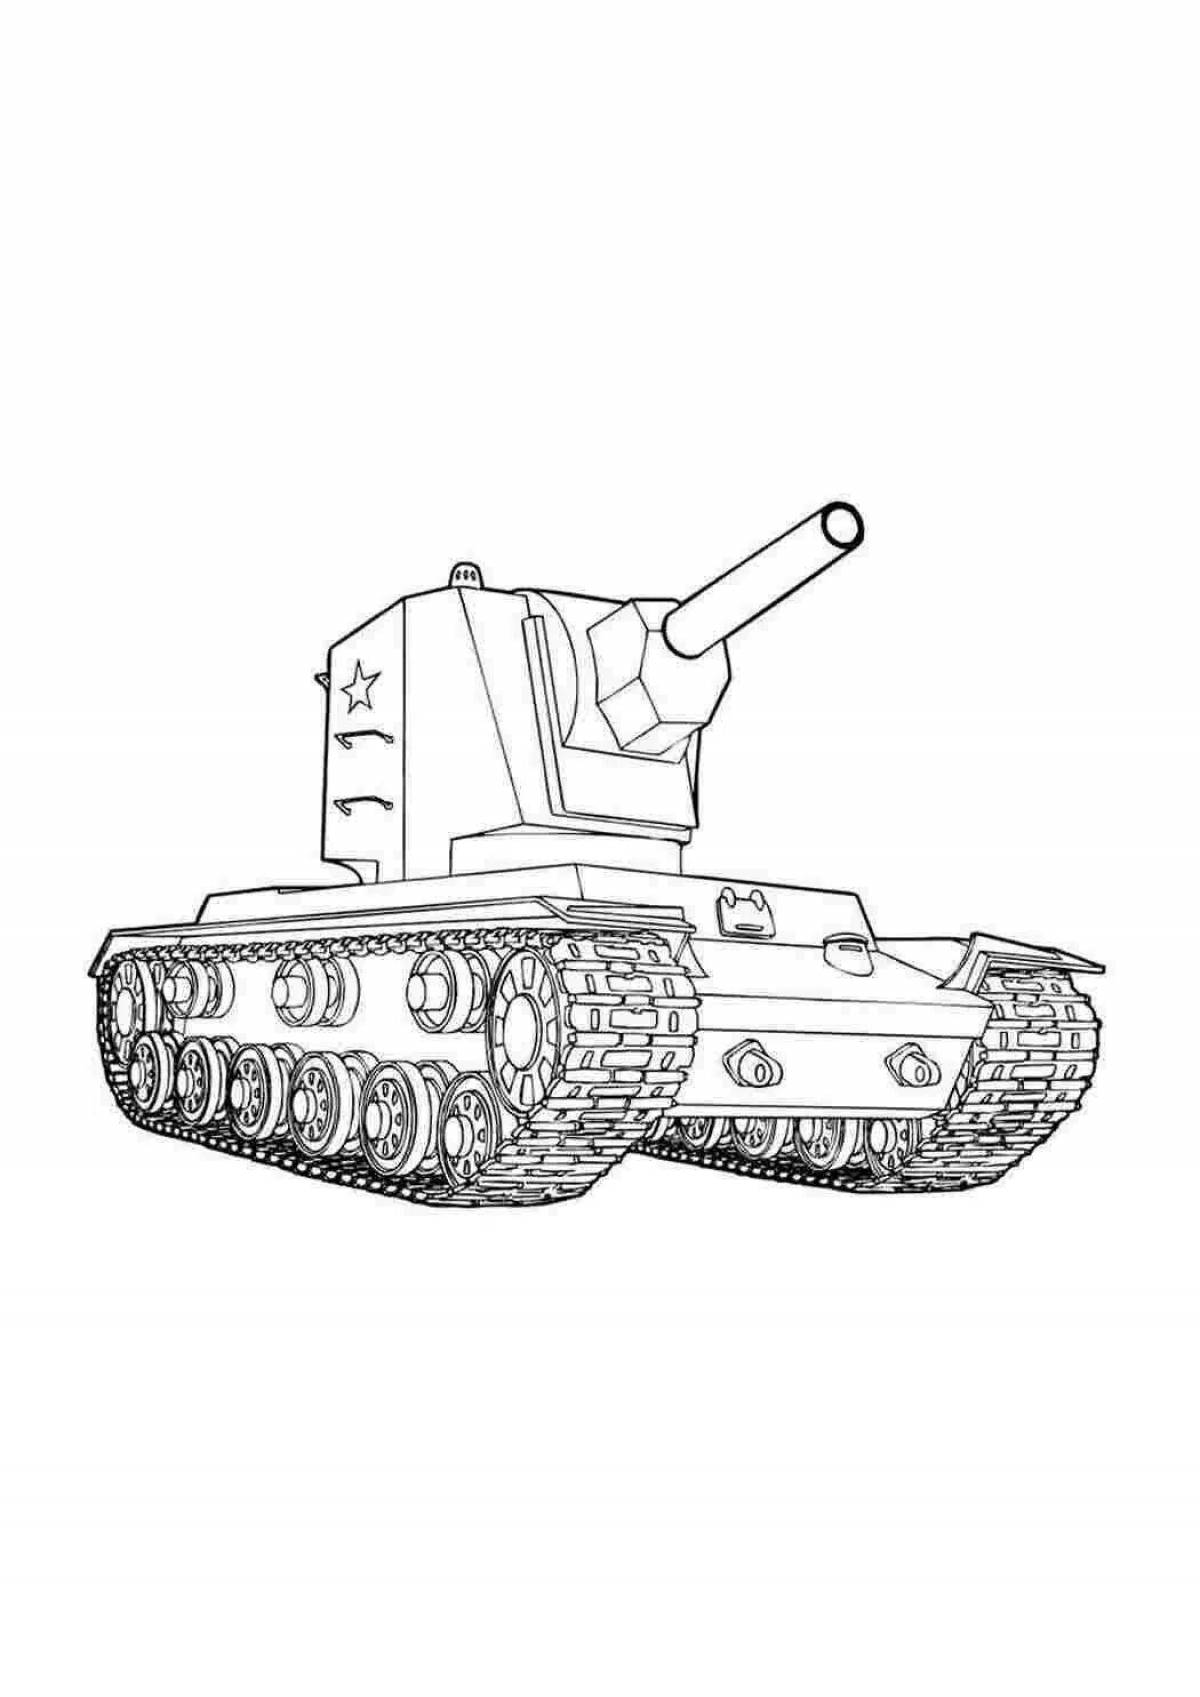 Раскраска великолепный лего танк